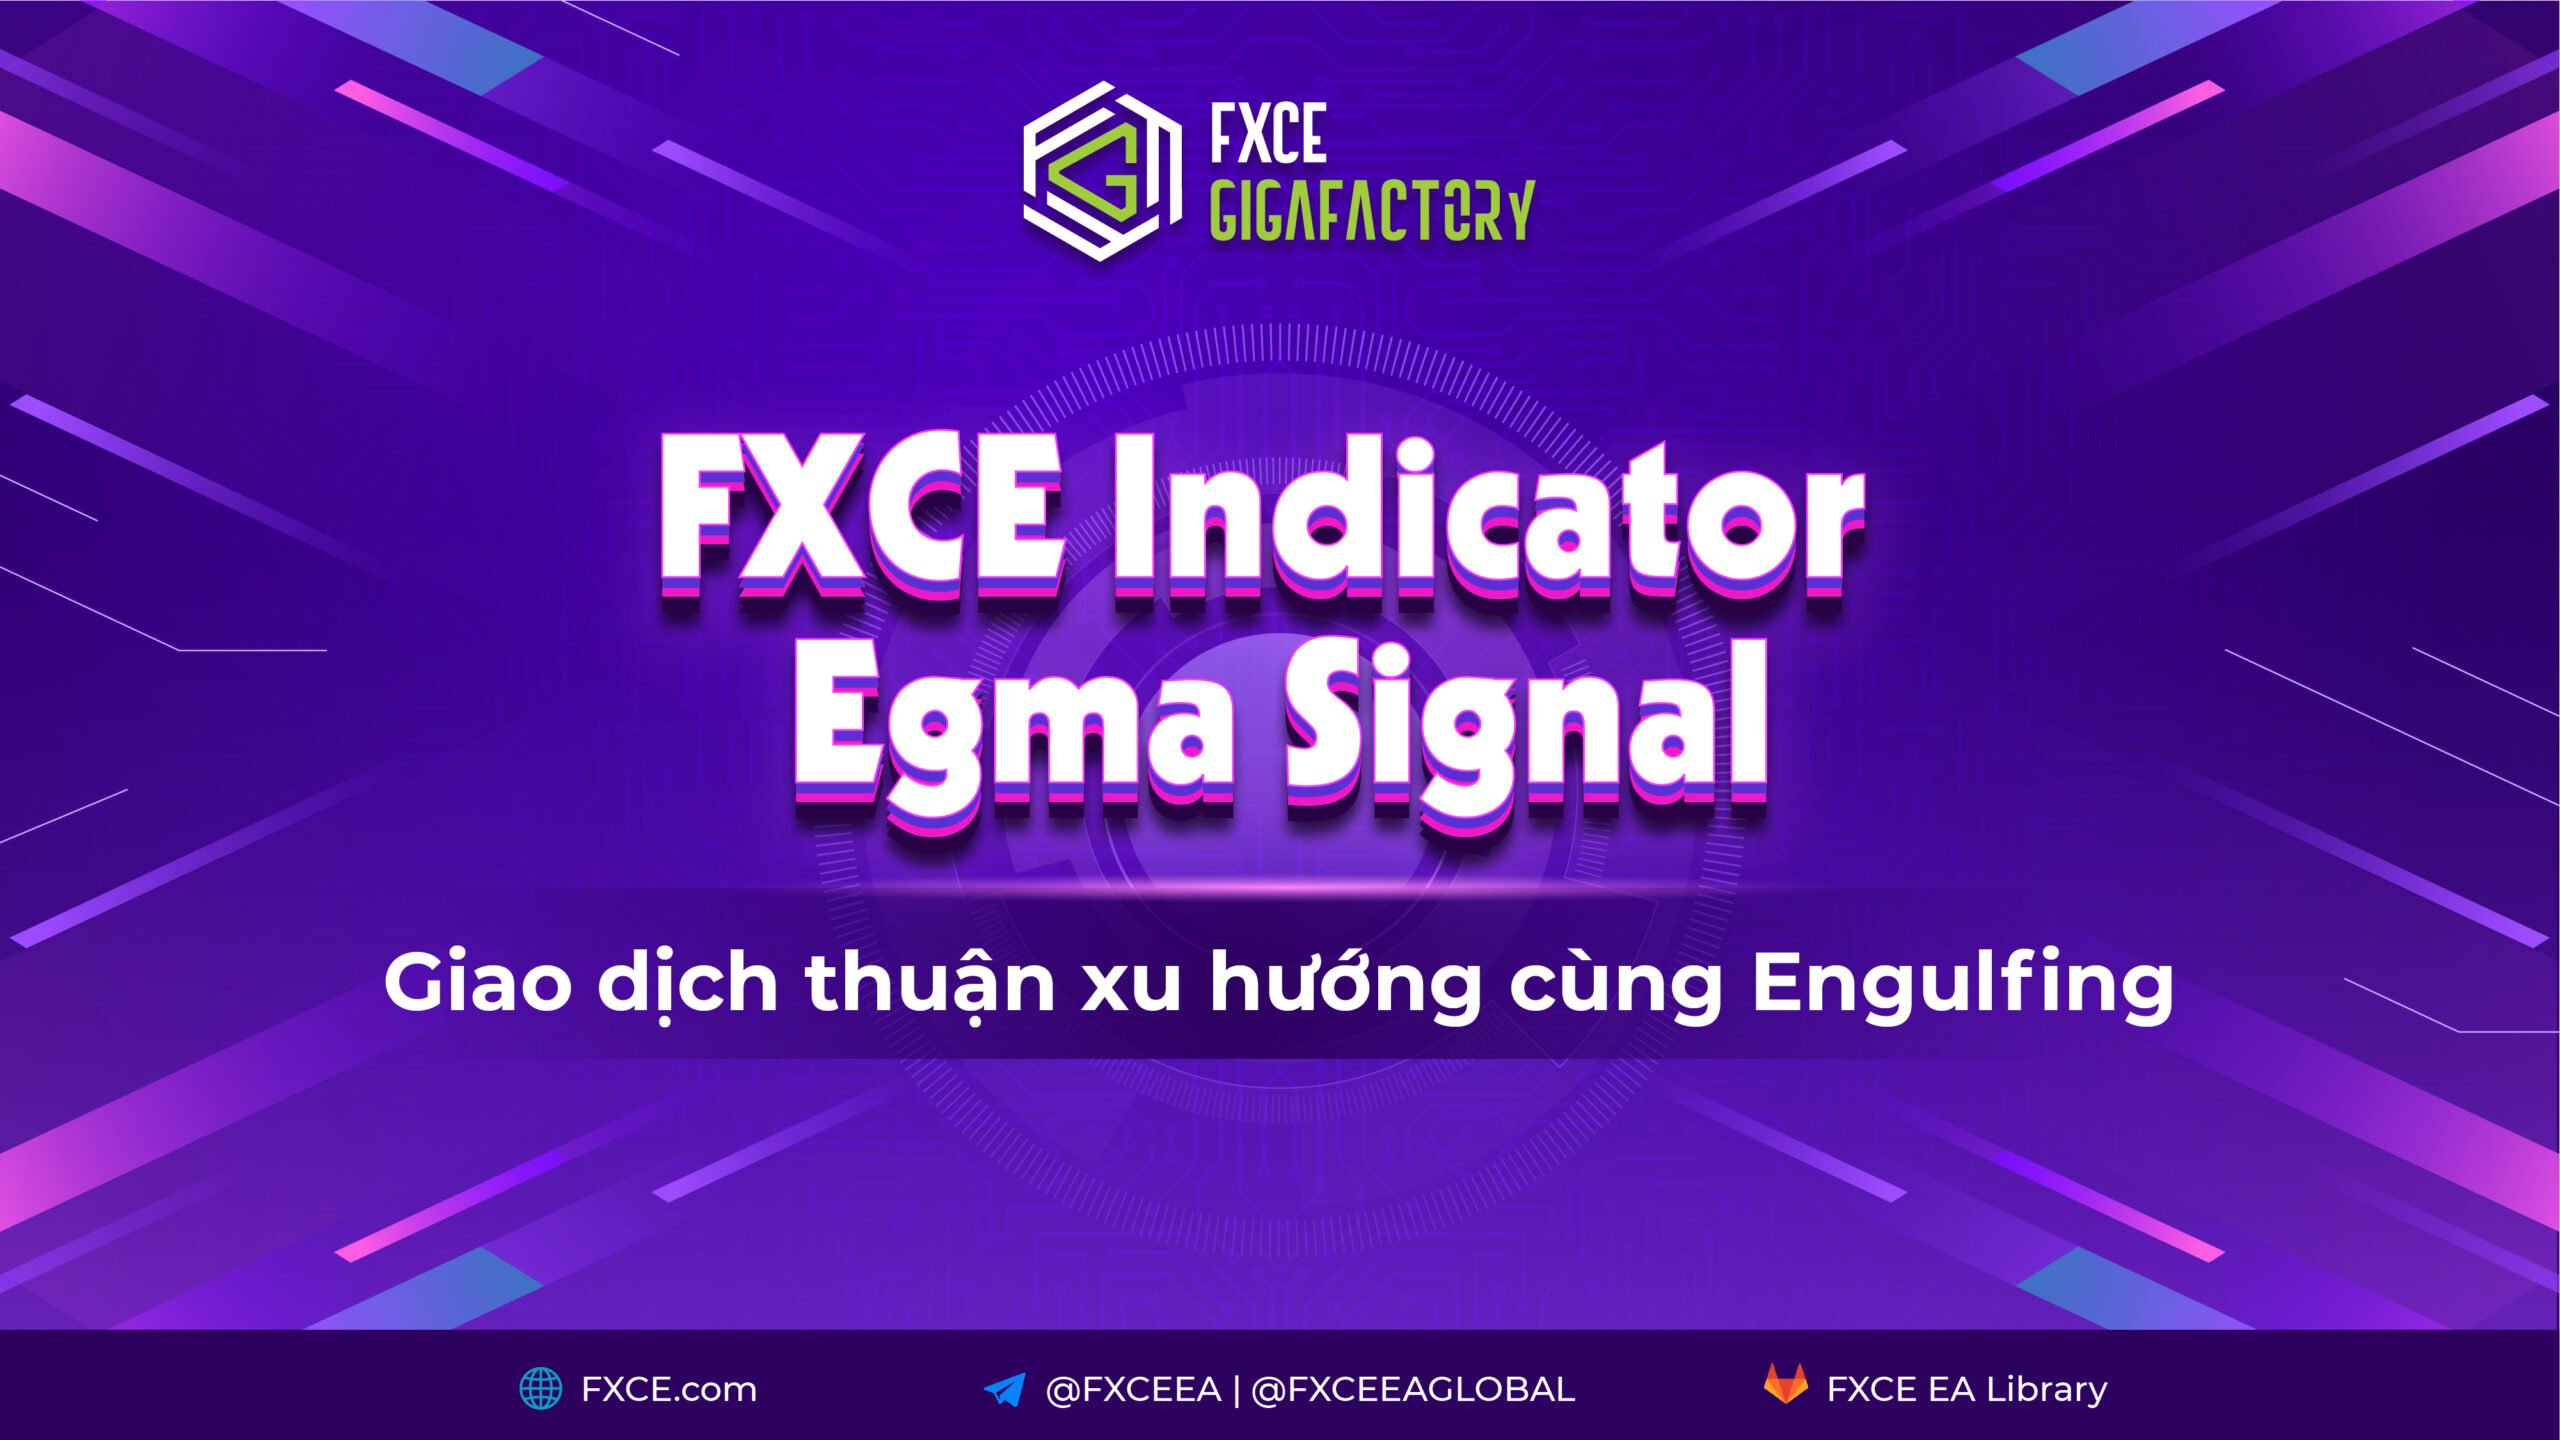 Hướng dẫn sử dụng FXCE Indicator Egma Signal